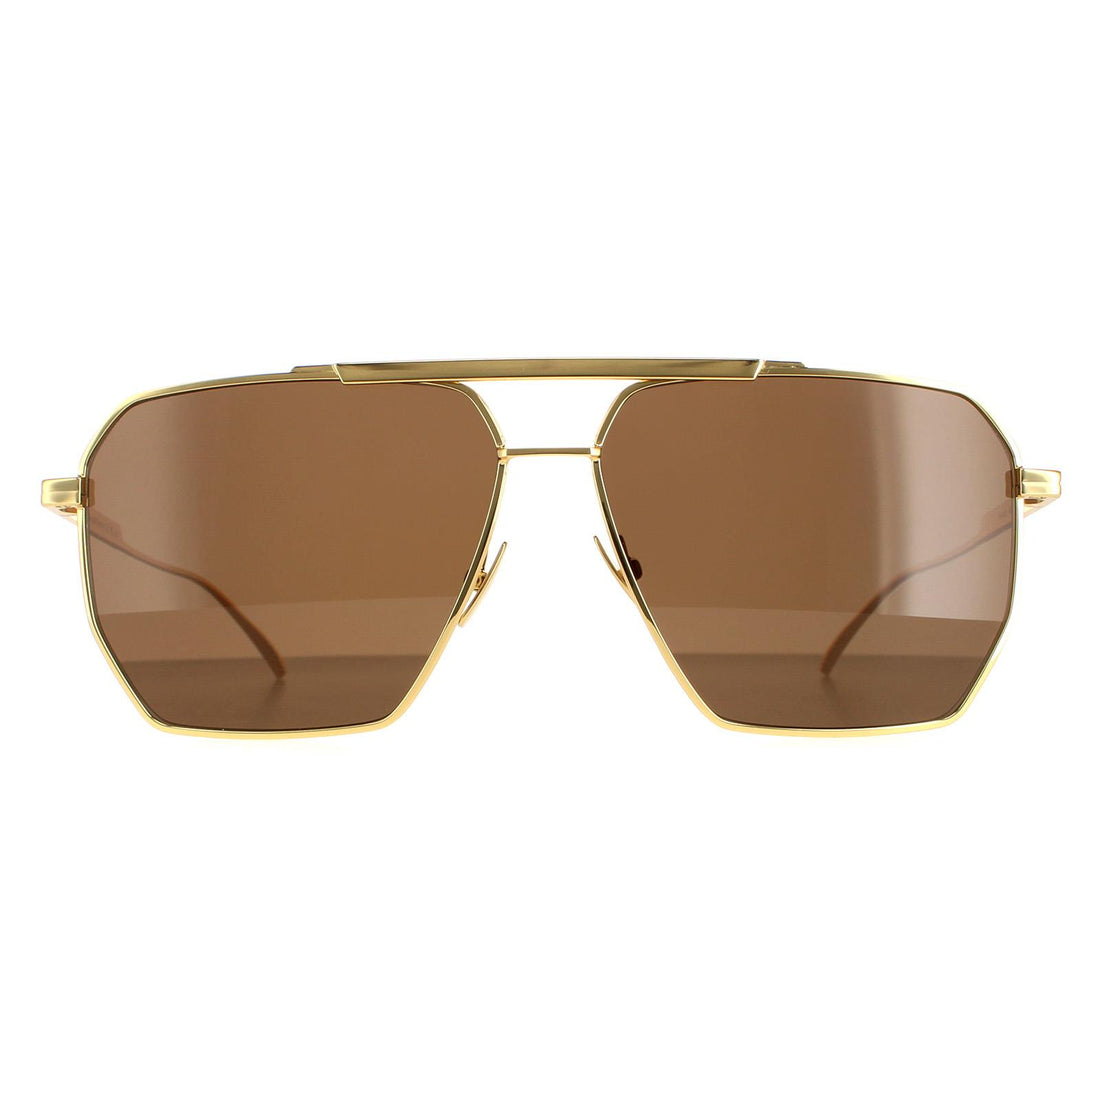 Bottega Veneta BV1012S Sunglasses Gold / Brown